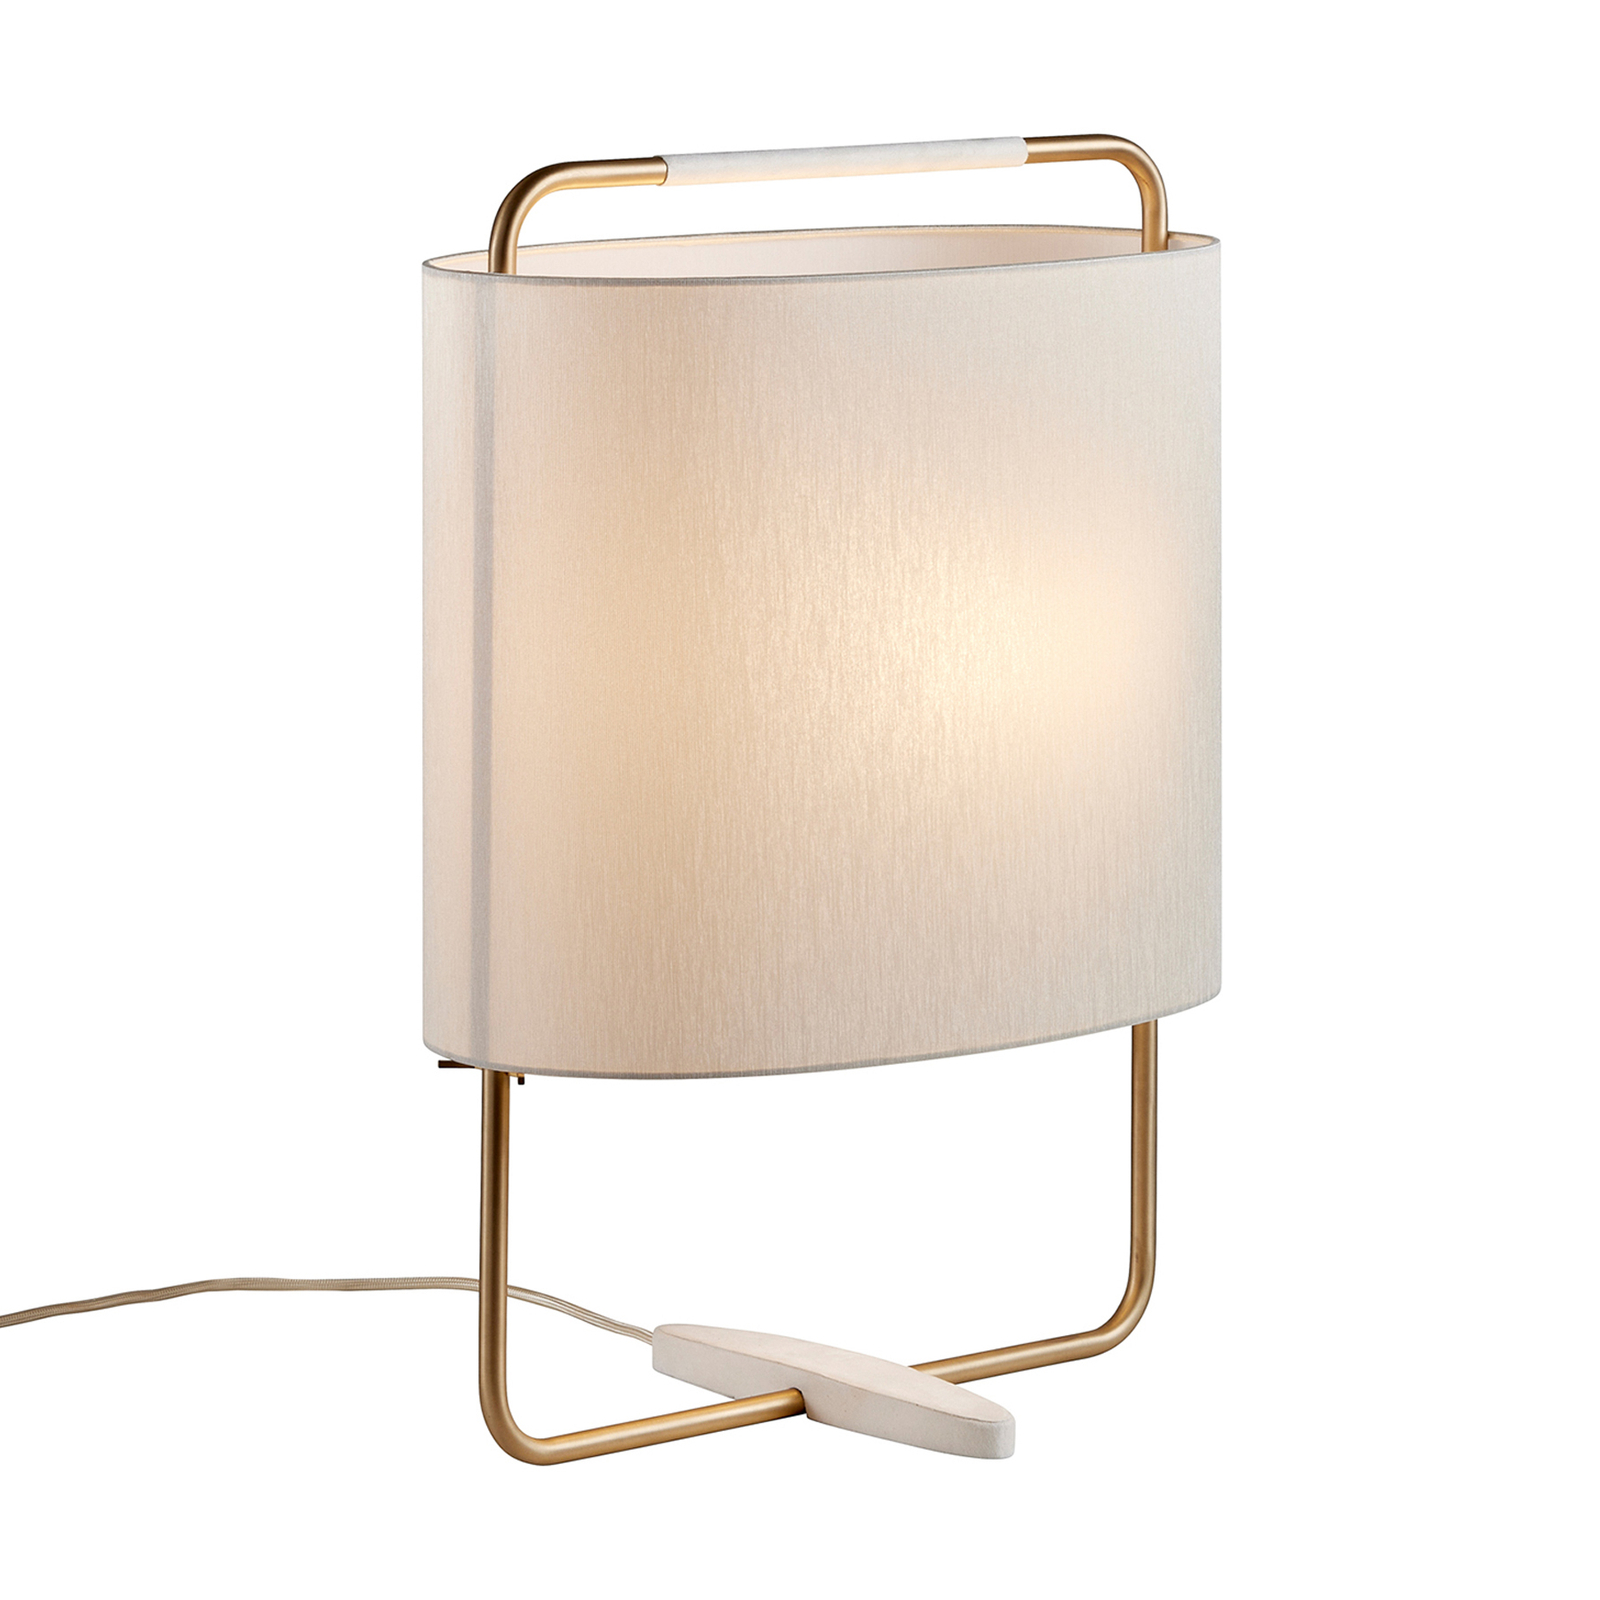 Margot table lamp, 55cm high, beige, gold, white